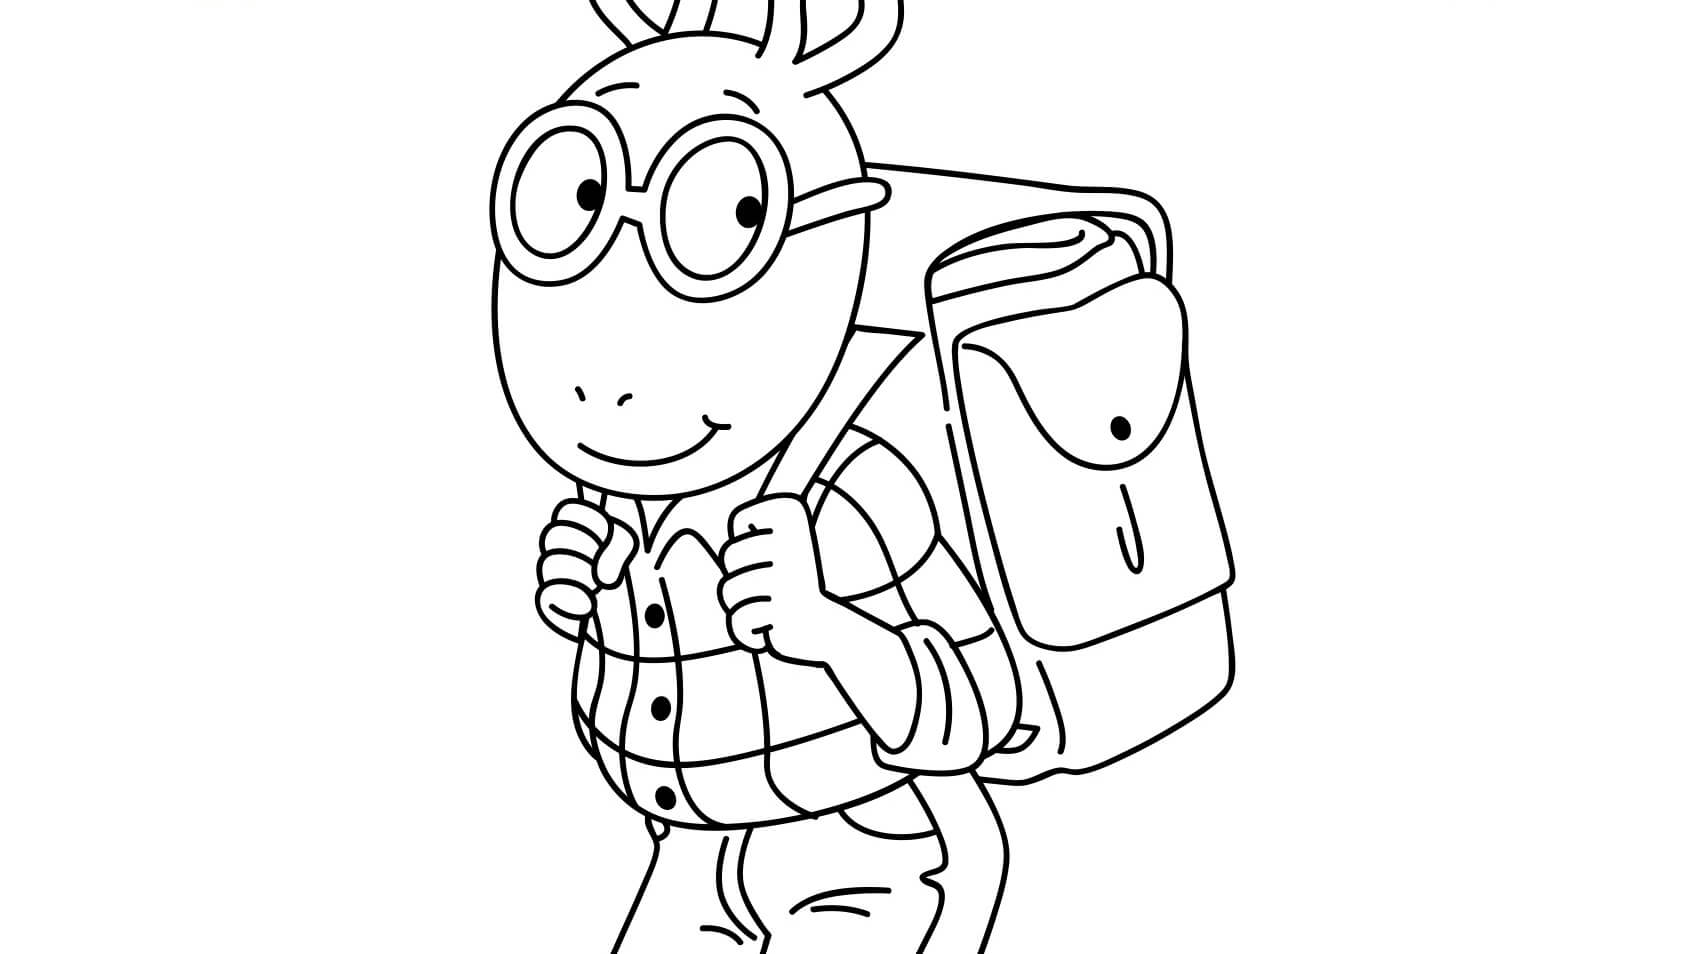 Arthur Read ir a la Escuela